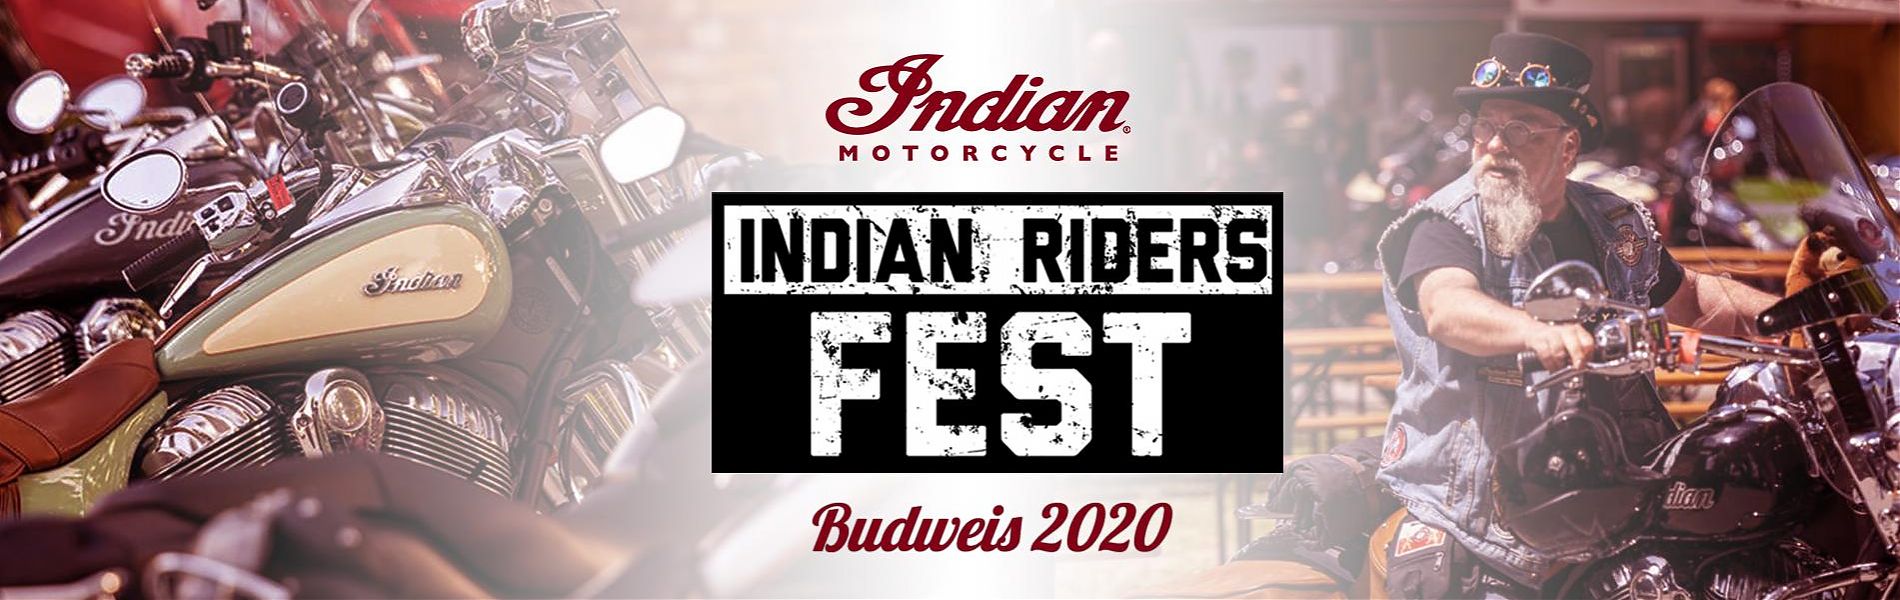 2020 Indian Riders Fest объявлен местом для Ежегодной международной встречи индейских мотоциклистов 